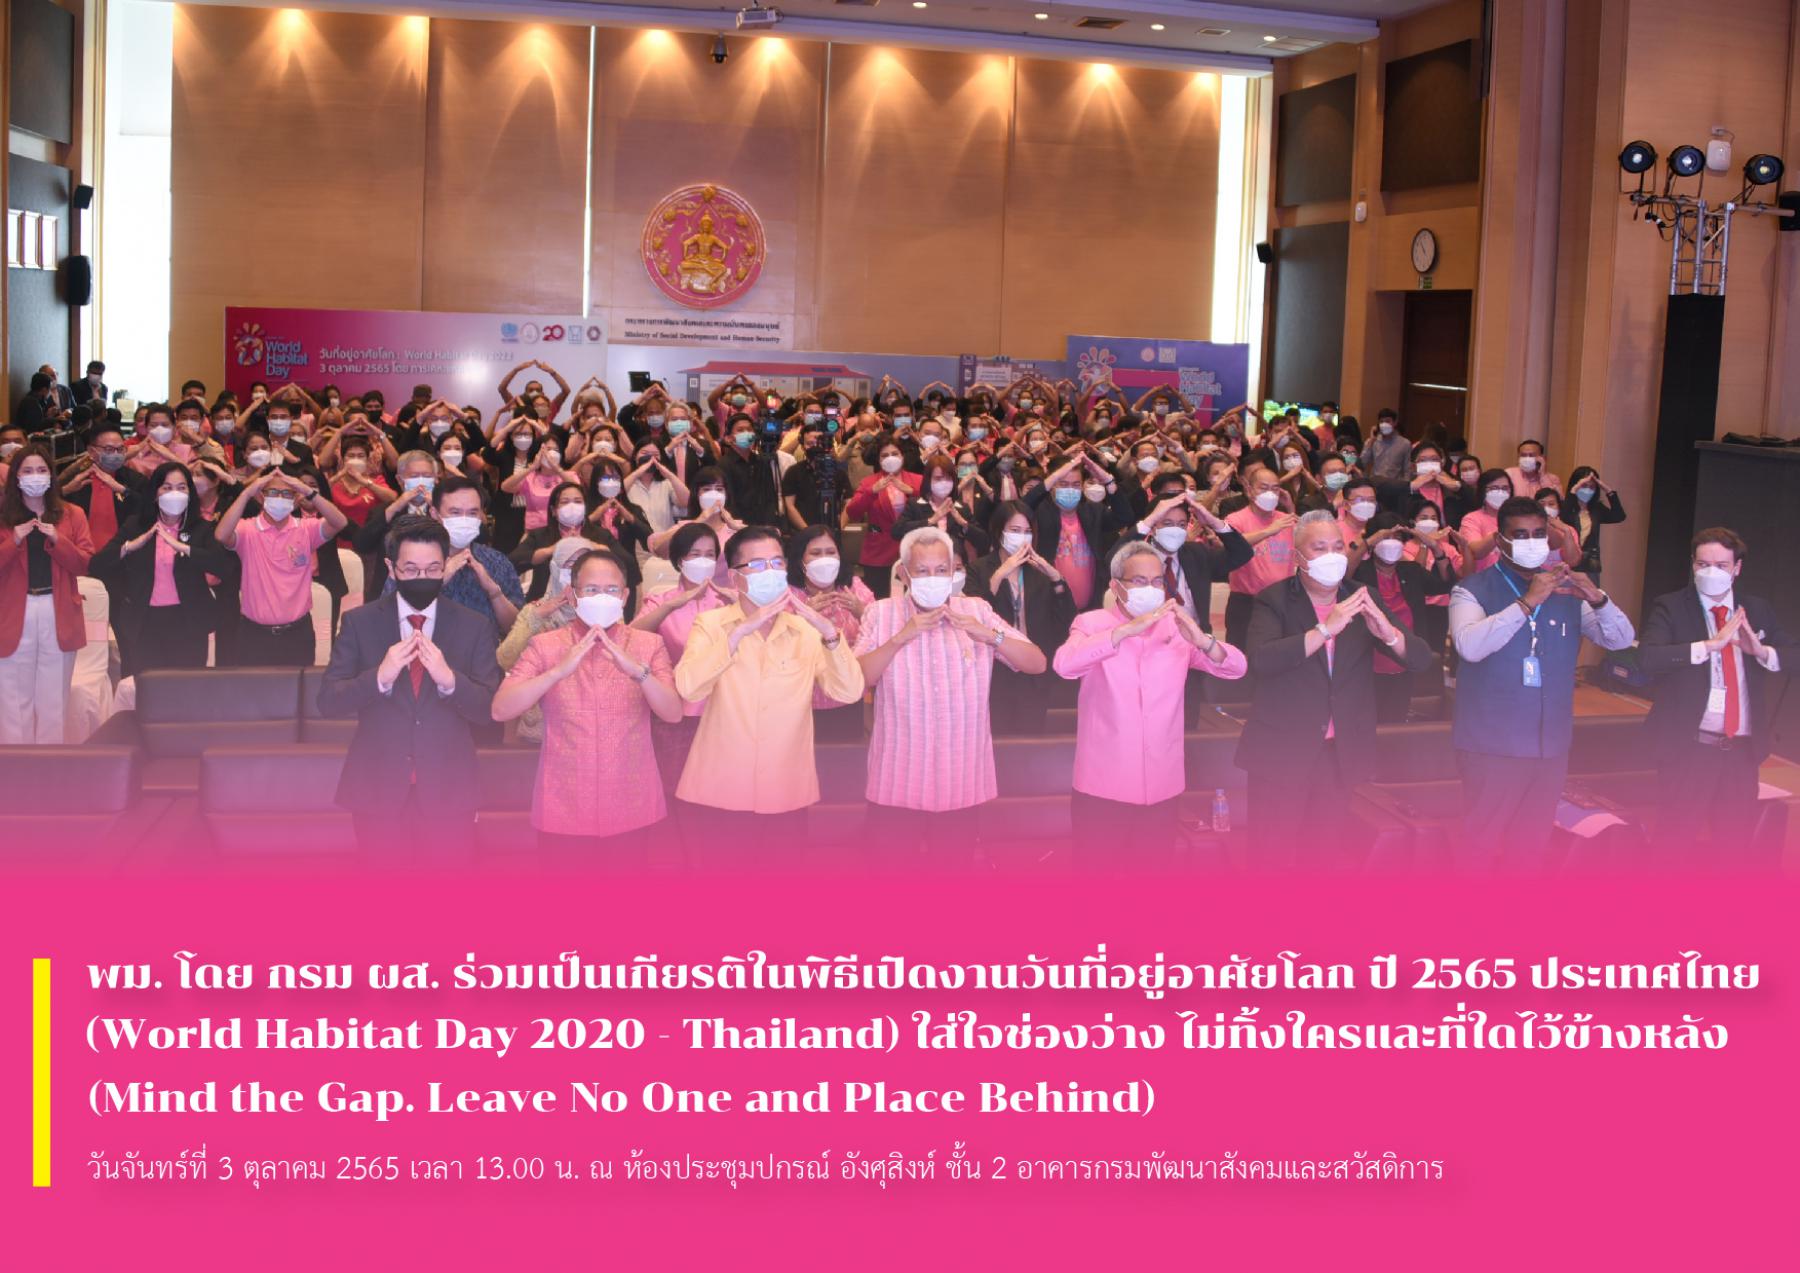 พม. โดย กรม ผส. ร่วมเป็นเกียรติในพิธีเปิดงานวันที่อยู่อาศัยโลก ปี 2565 ประเทศไทย (World Habitat Day 2020 - Thailand) ใส่ใจช่องว่าง ไม่ทิ้งใครและที่ใดไว้ข้างหลัง (Mind the Gap. Leave No One and Place B